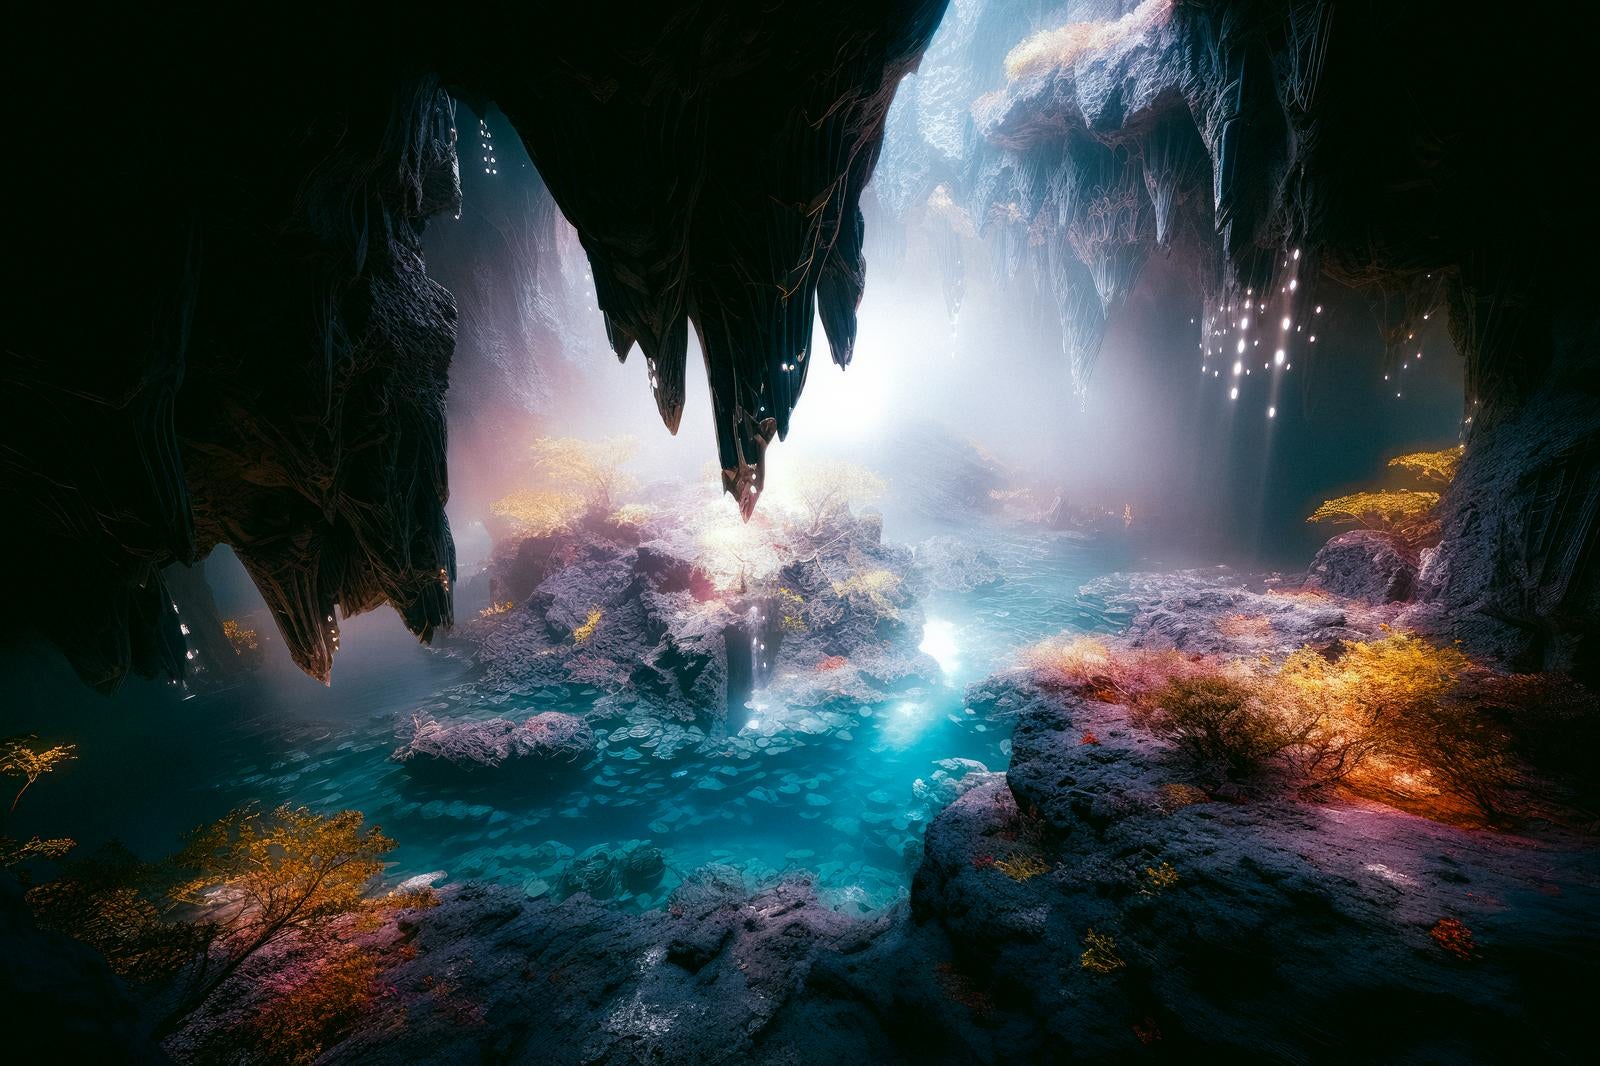 「地下の鍾乳洞と神秘的な水の世界」の写真